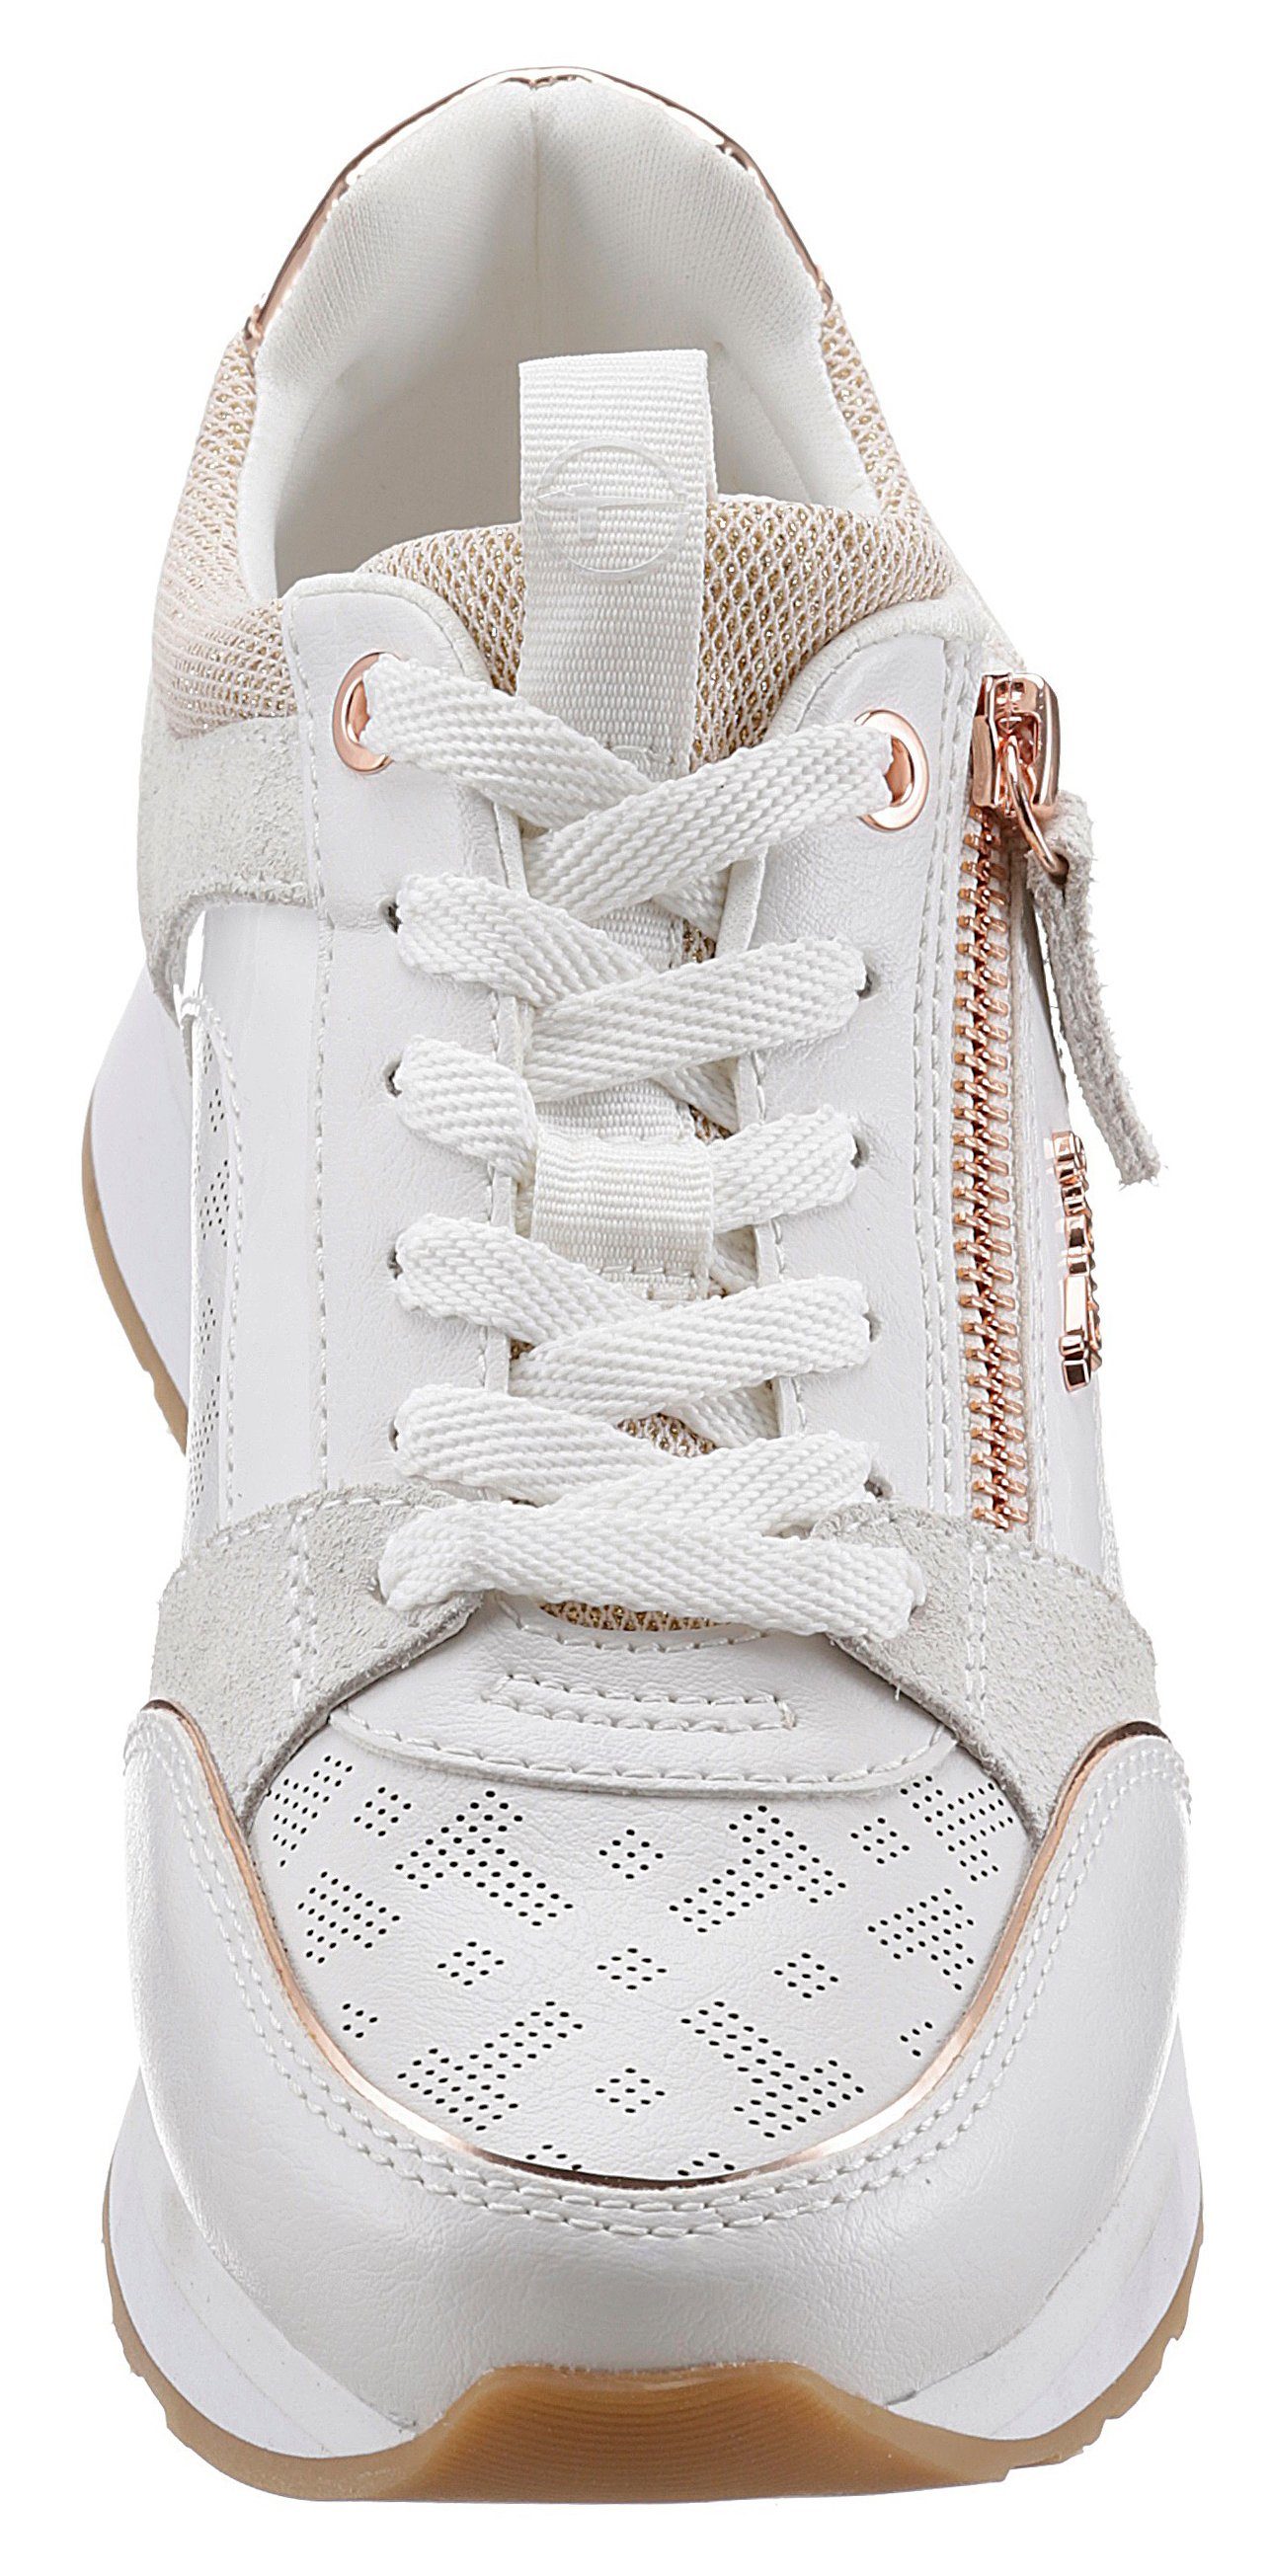 Tamaris Sneaker mit praktischem Reißverschluss weiß-roségoldfarben